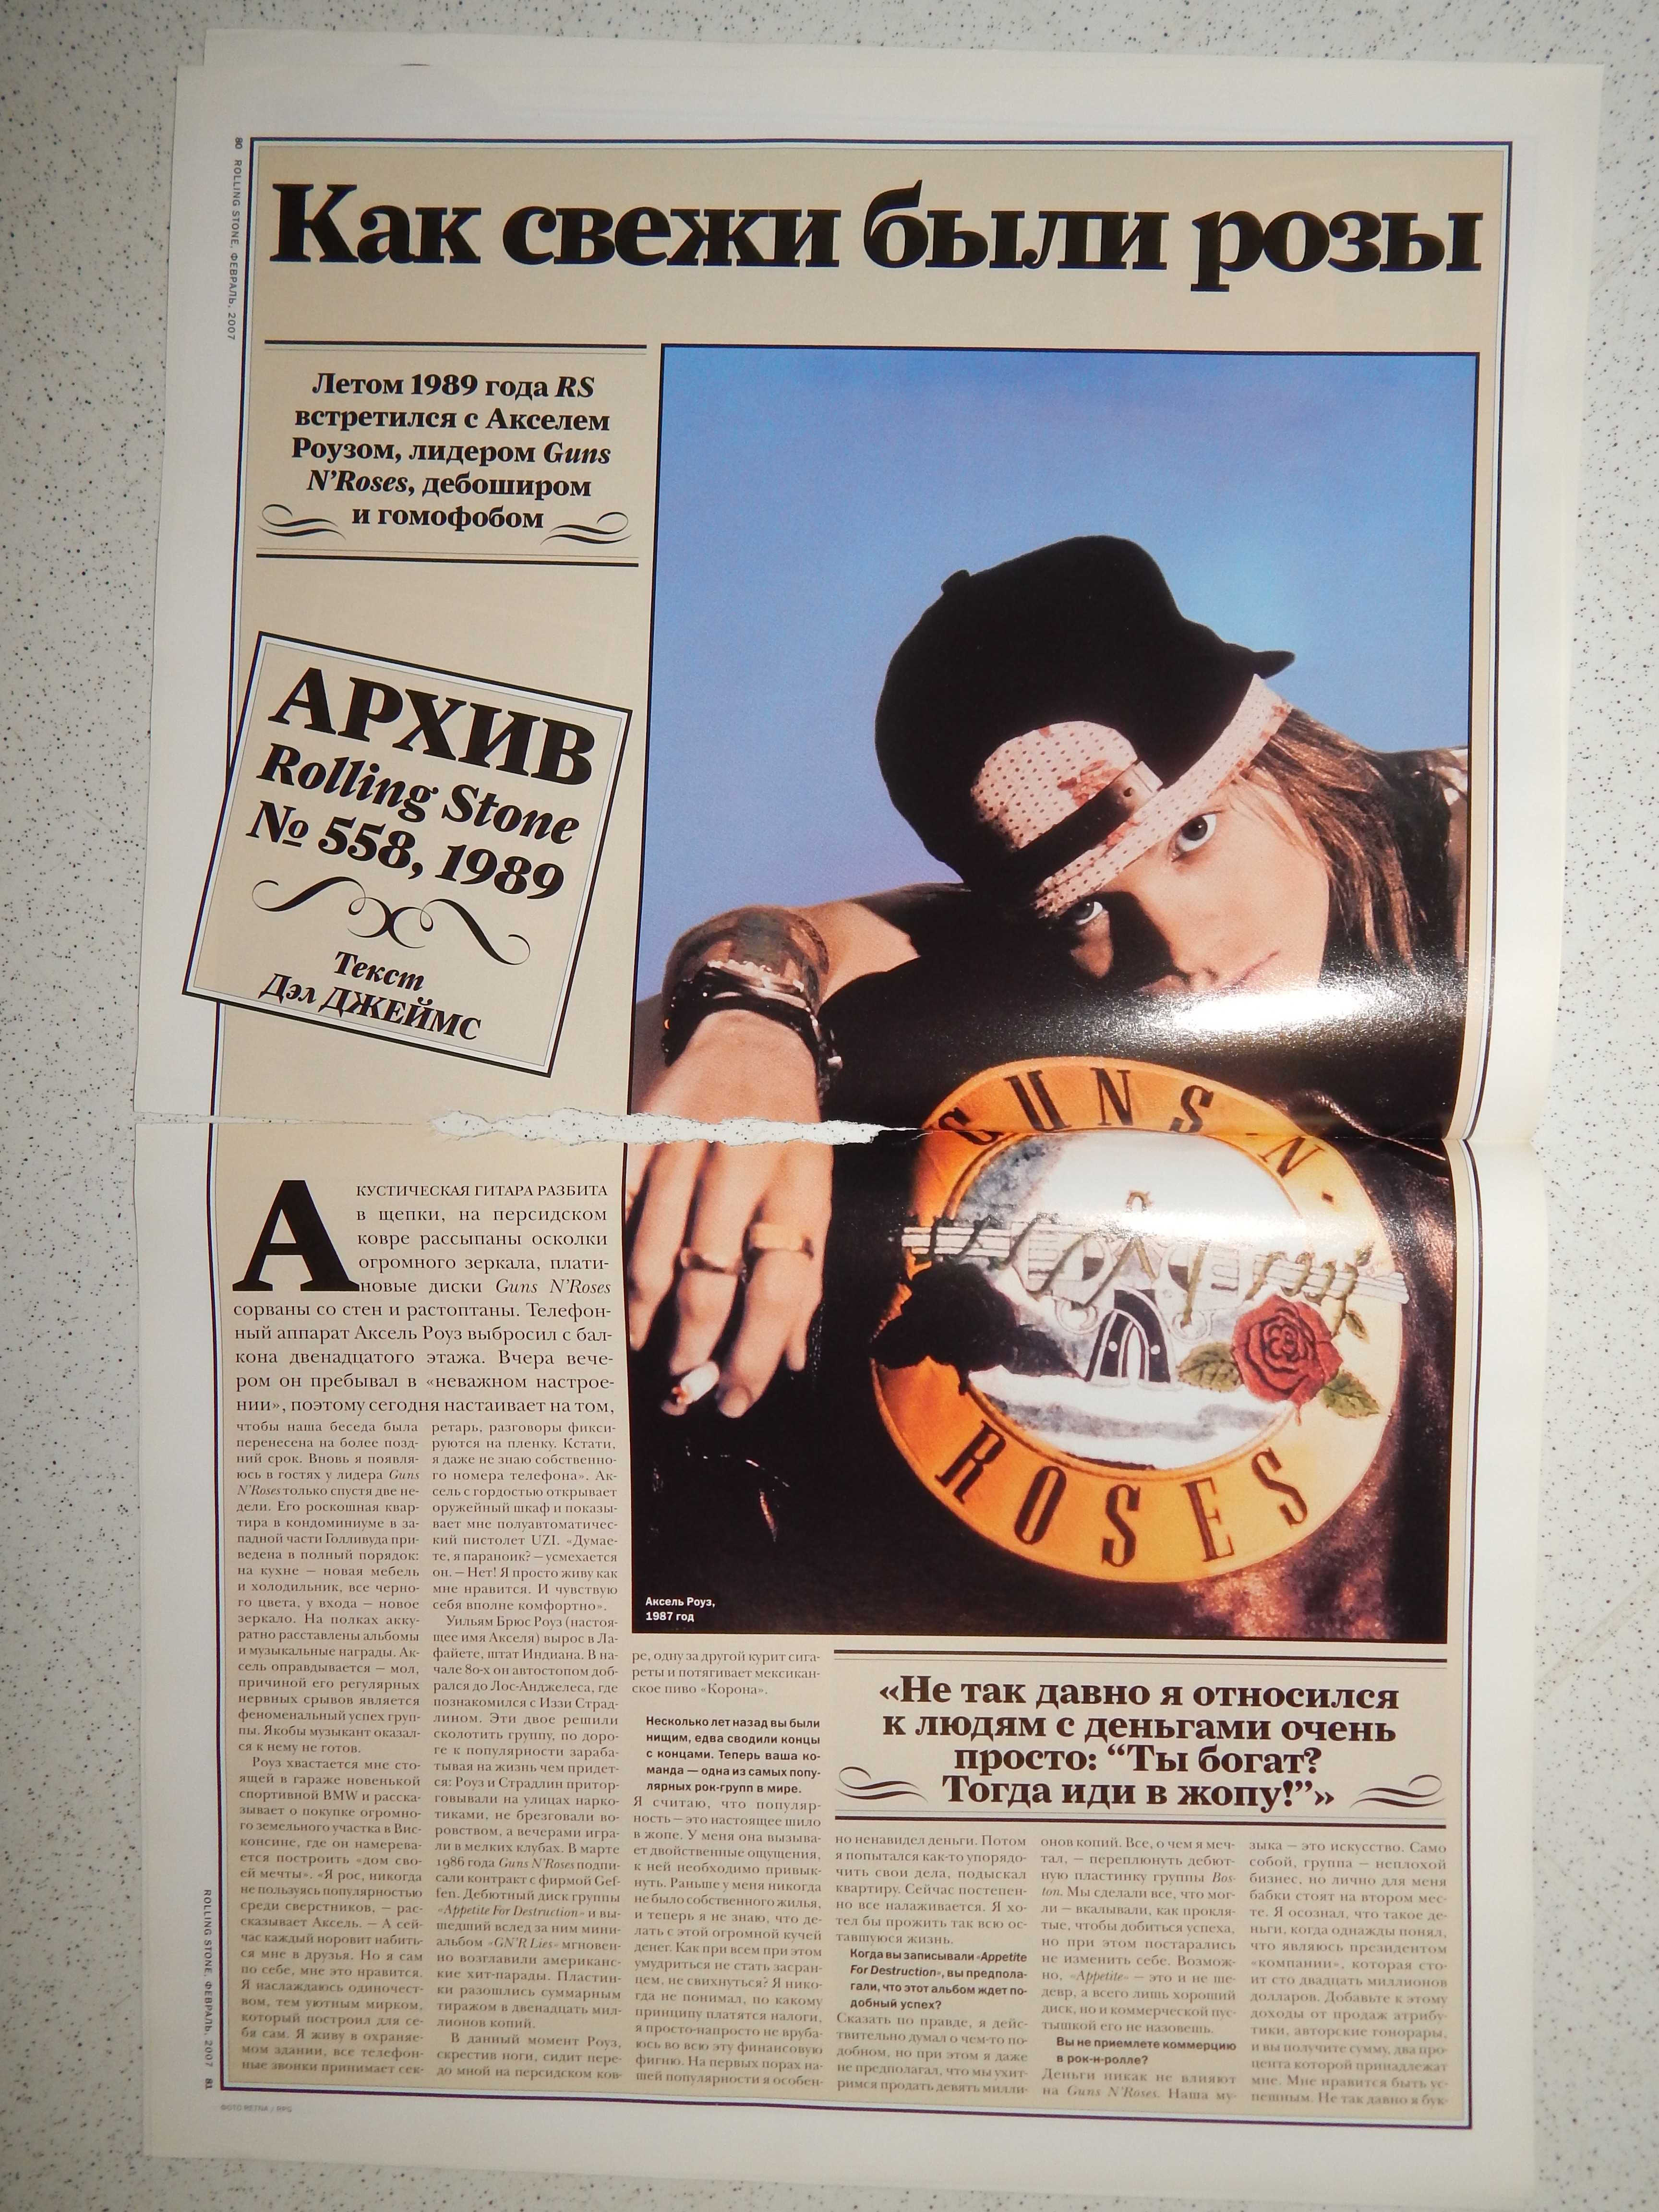 Постеры Bon Jovi, постер и вырезки Guns-N-Roses.